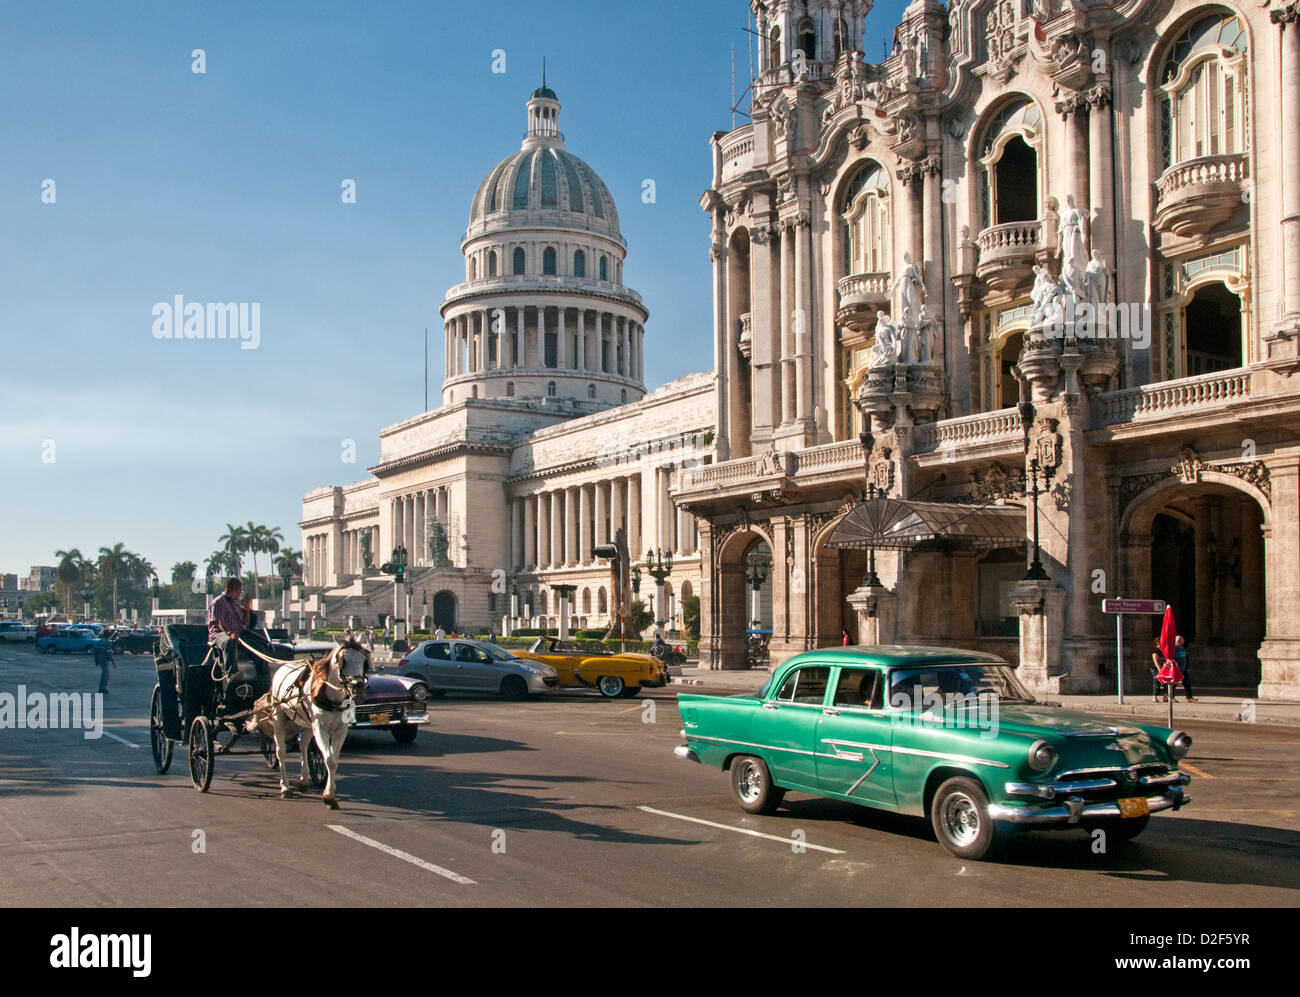 Classic anni cinquanta la vettura americana, il Capitolio Building & Gran Teatro de la Habana, Paseo de Marti, Habana Vieja, Havana, Cuba Foto Stock